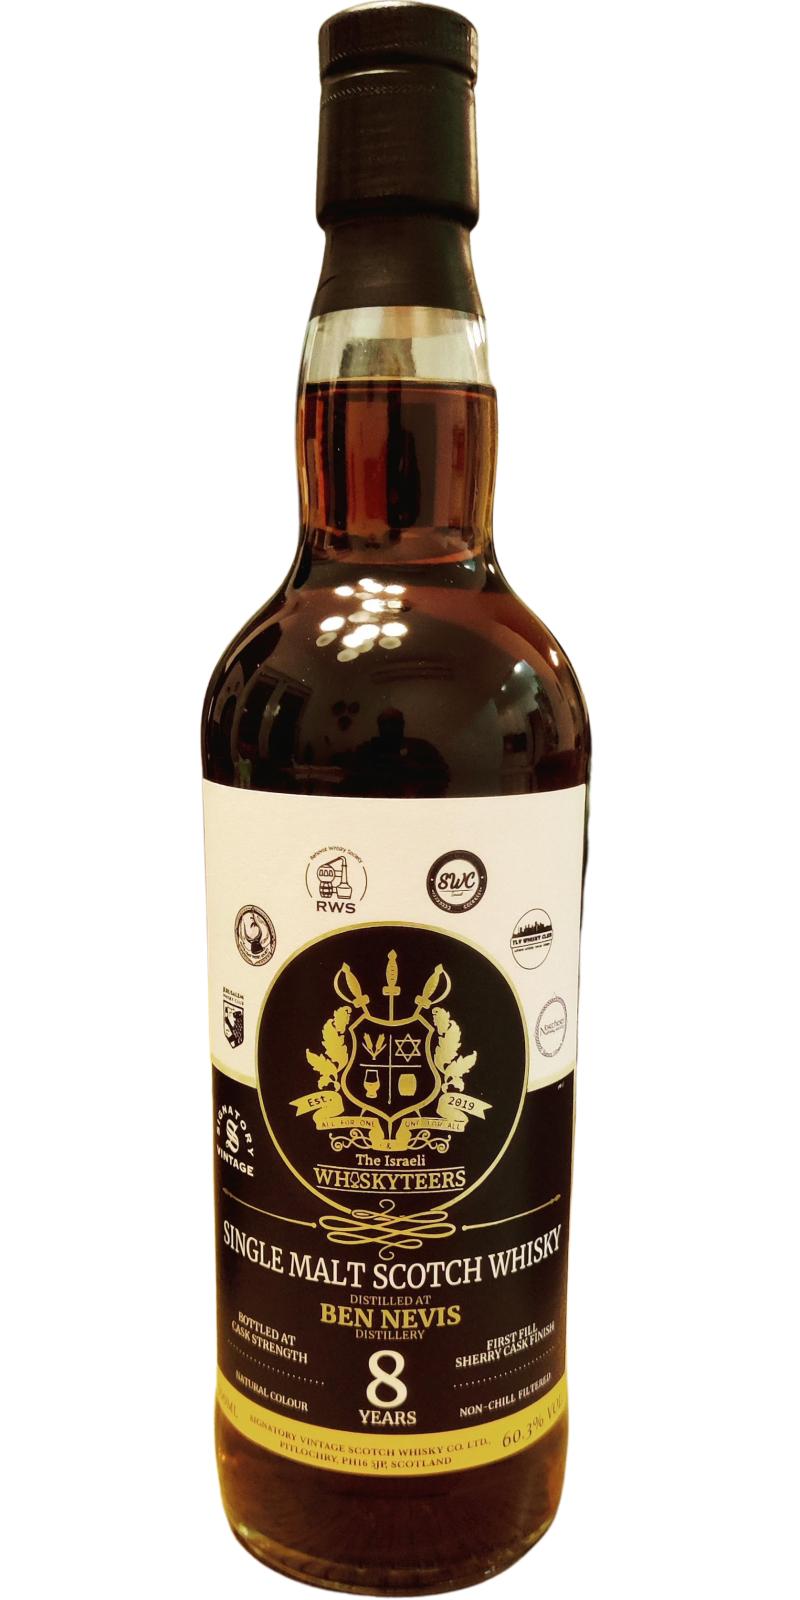 Ben Nevis 2014 SV 1st Fill Sherry The Israeli Whiskyteers 60.3% 700ml